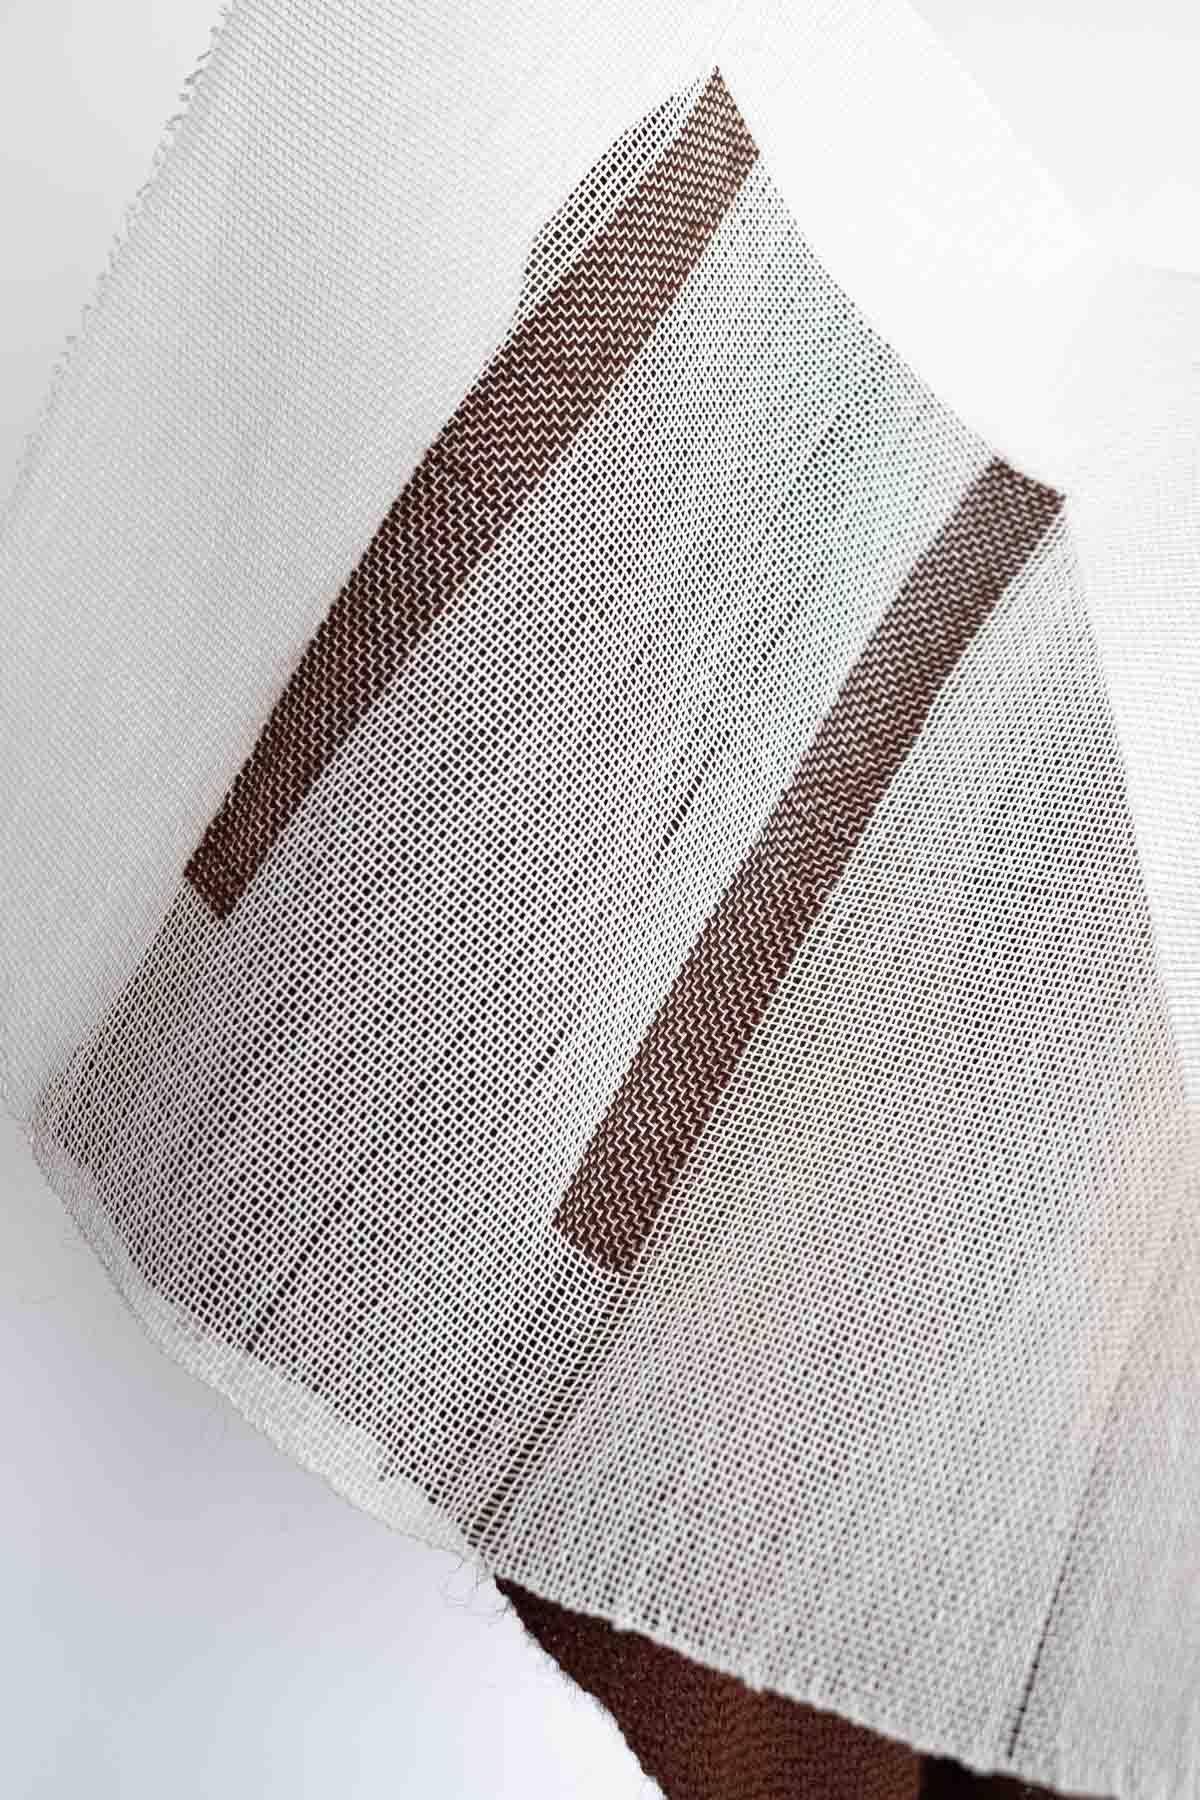 Due Facce Dello Stesso Ordito (2020) 62x51.5x28 cm Paper yarn, Alpaca